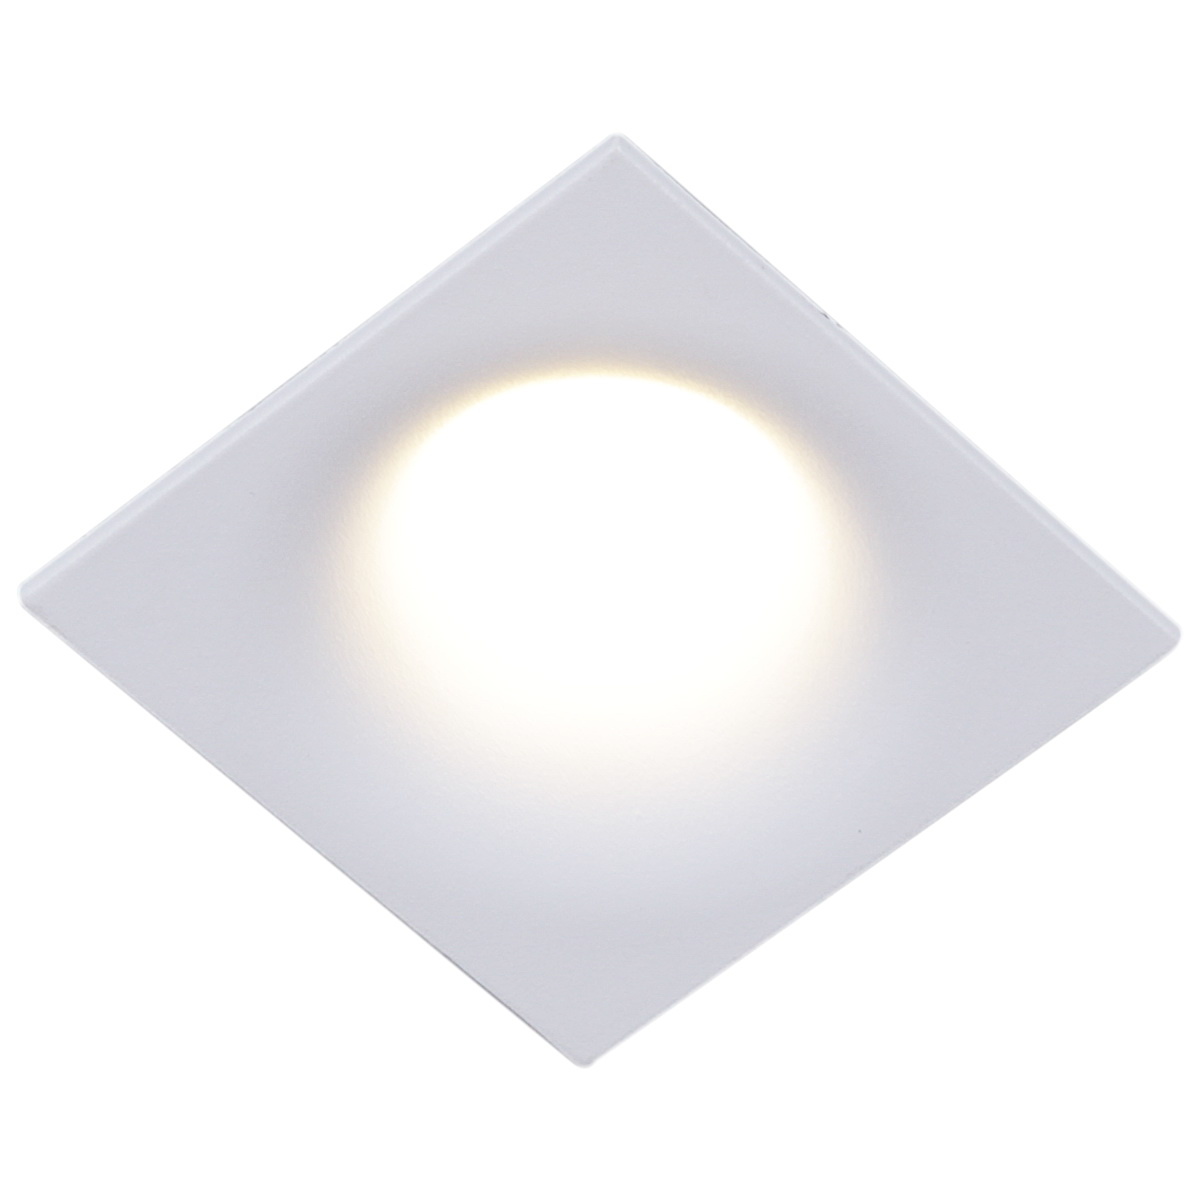 Точечный светильник Reluce 16088-9.0-001PT MR16 WT